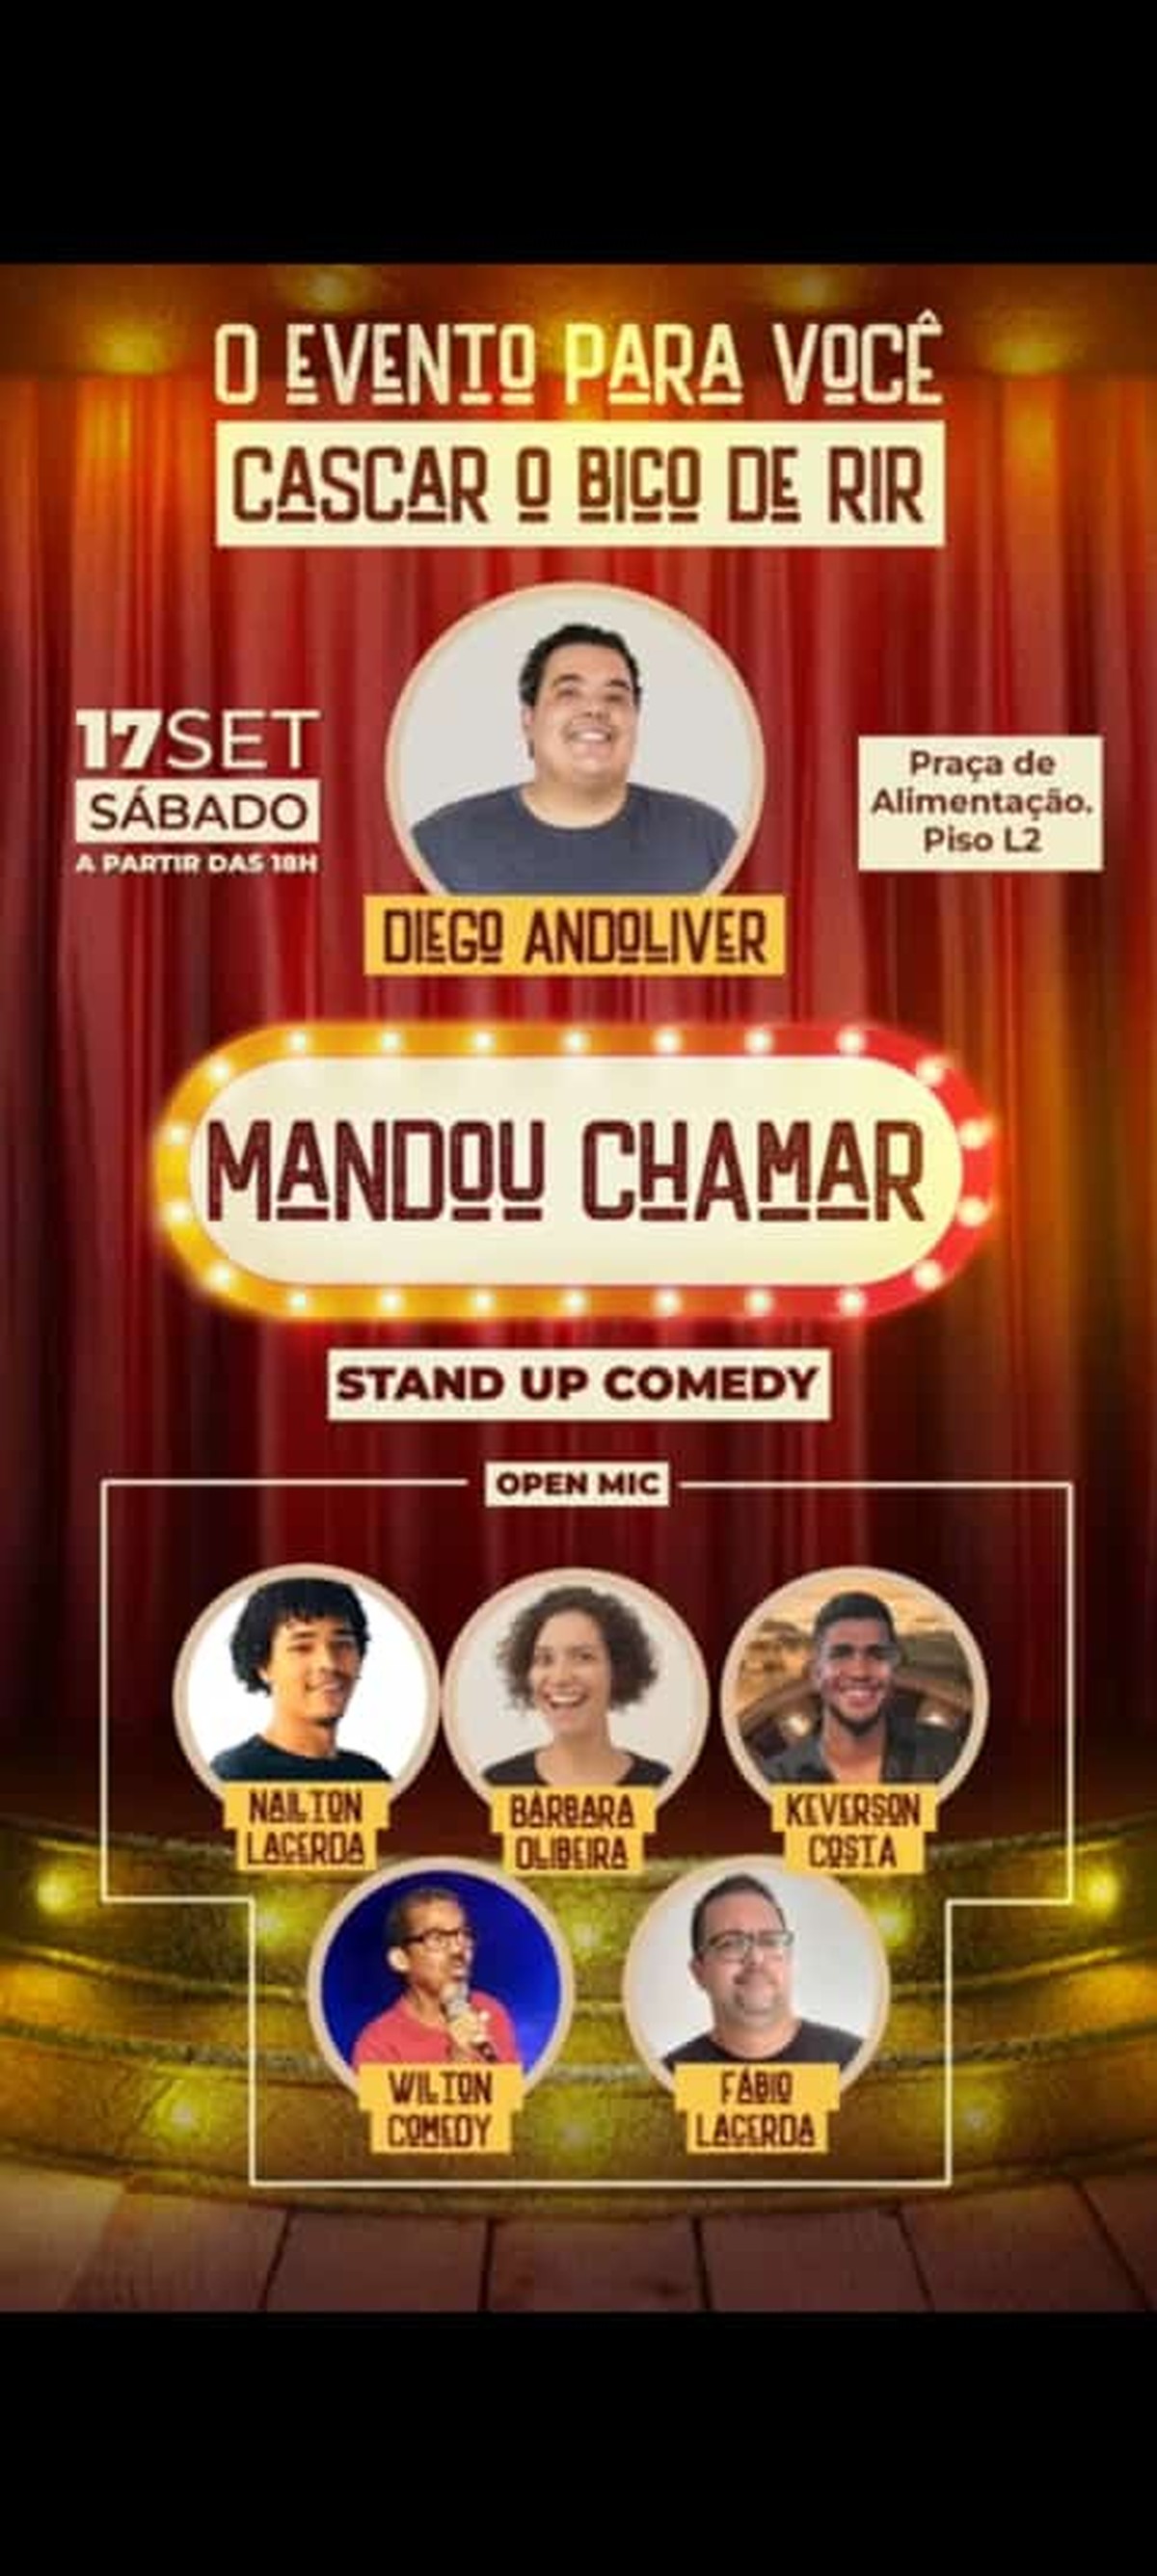 Show De Stand Up Comedy Mandou Chamar Acontece Neste Sábado 17 Tá Rolando Rede Globo 7637